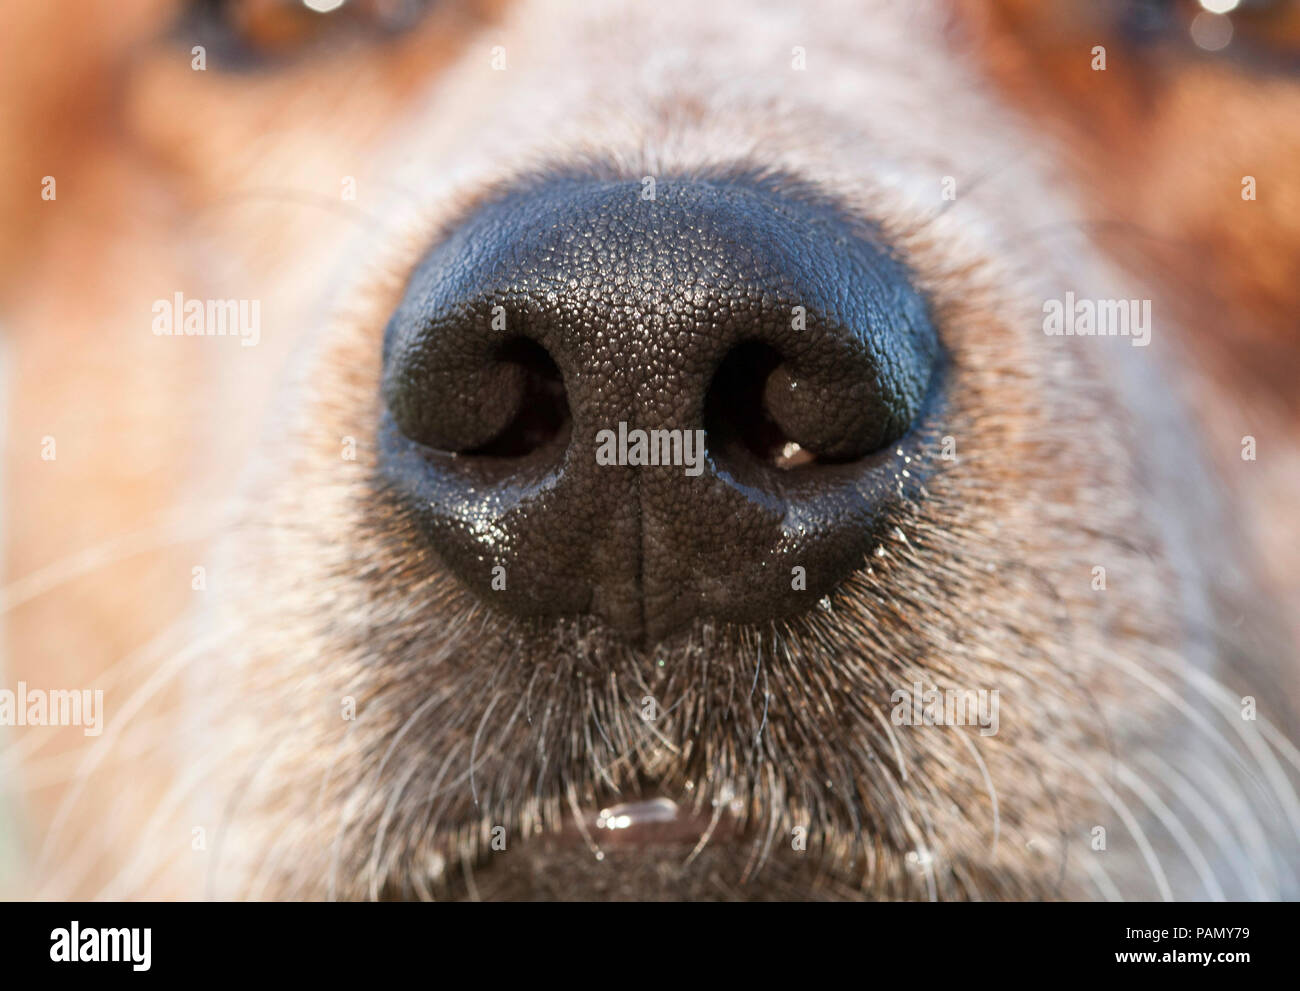 Australian Cattle Dog. Close up de nez et museau. L'Allemagne... Banque D'Images